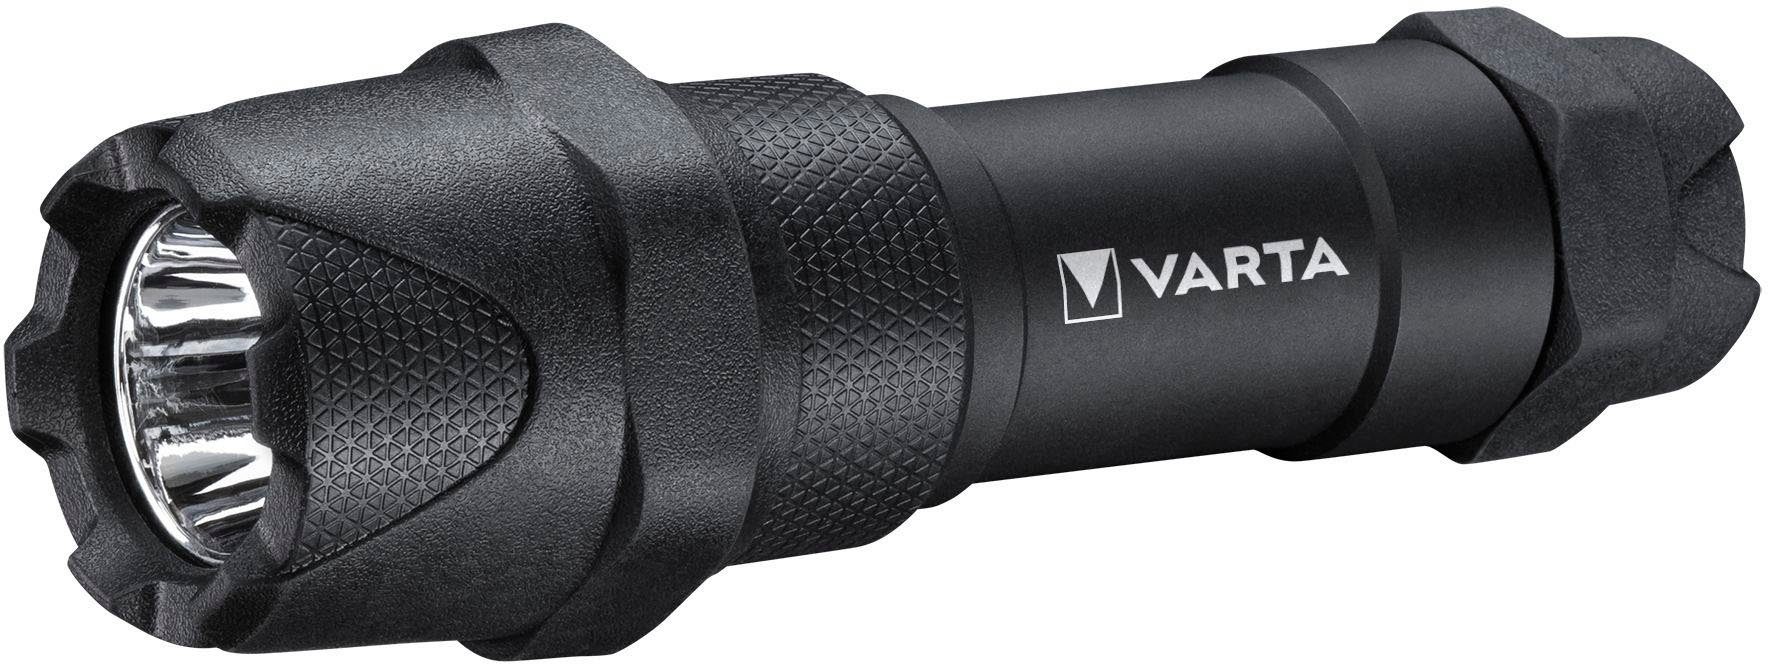 VARTA Taschenlampe F10 Pro Indestructible